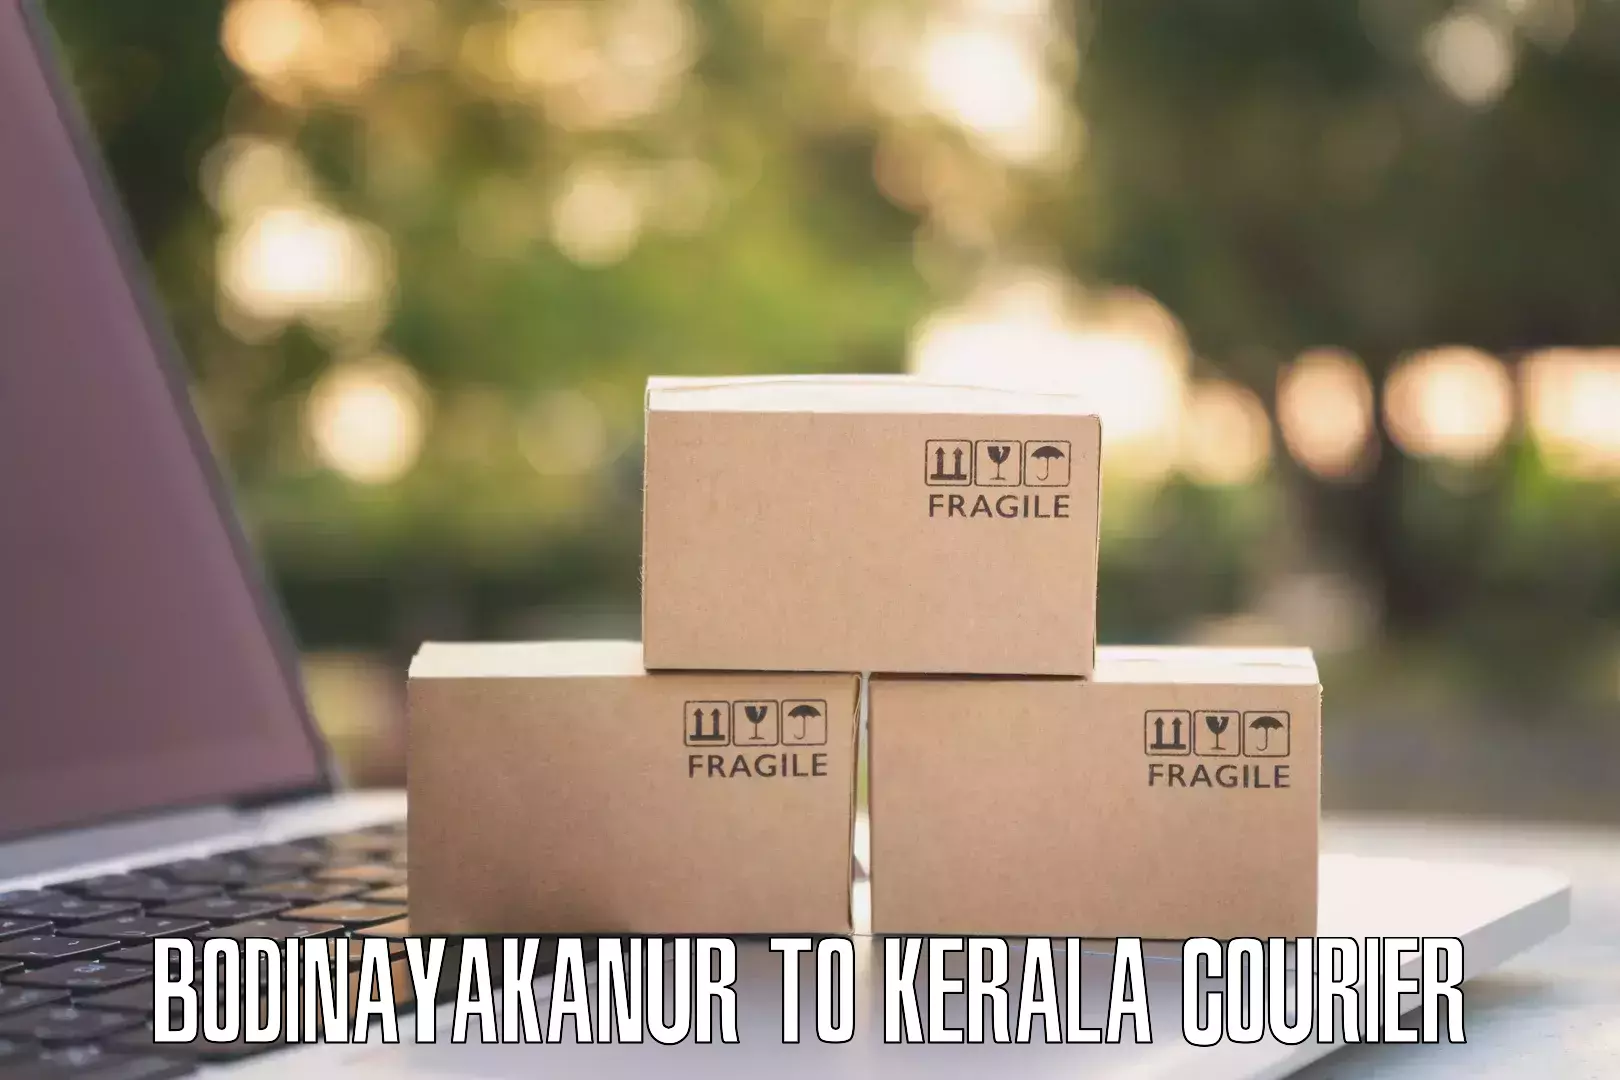 Quick courier services Bodinayakanur to Kalpetta